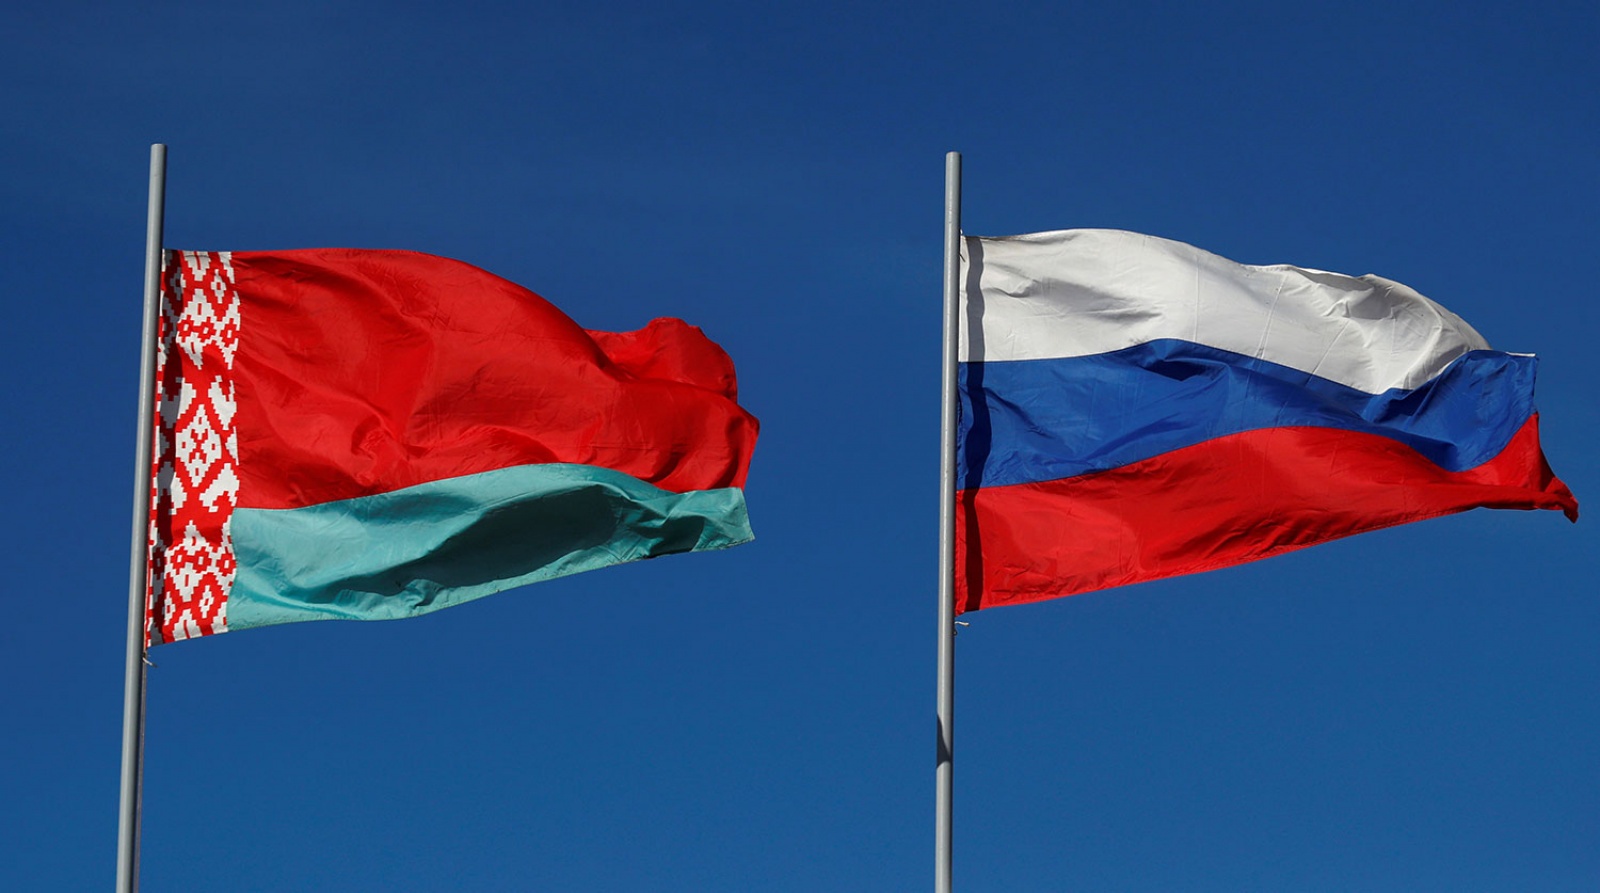 Мезенцев призвал к усилению взаимодействия России и Беларуси по линии союзных программ